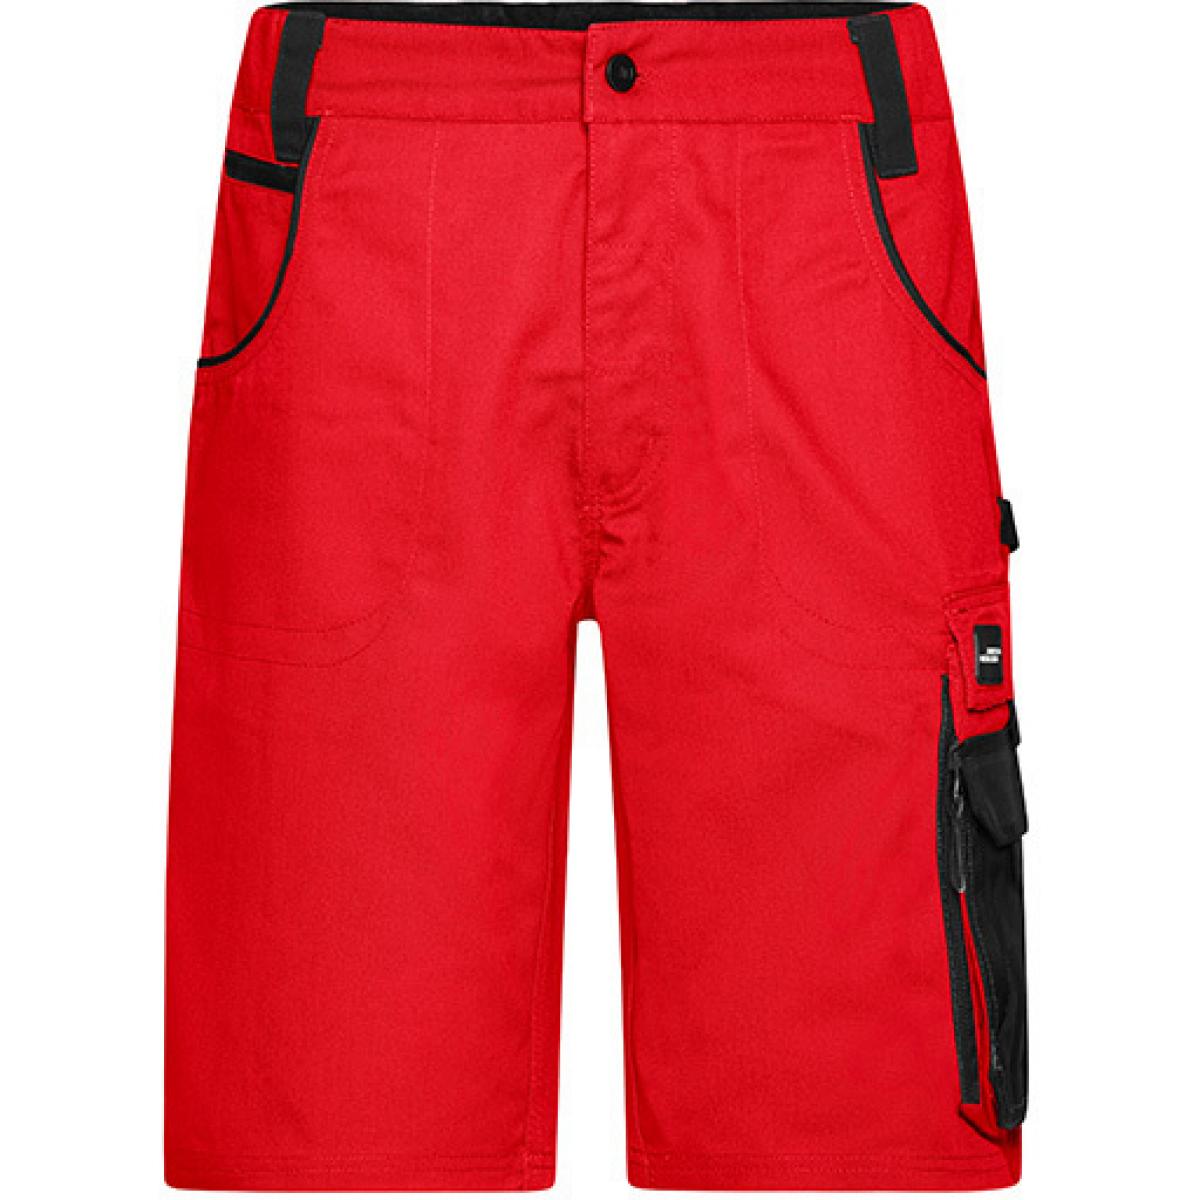 Hersteller: James+Nicholson Herstellernummer: JN835 Artikelbezeichnung: Herren Hose, Workwear Bermudas -STRONG- Farbe: Red/Black